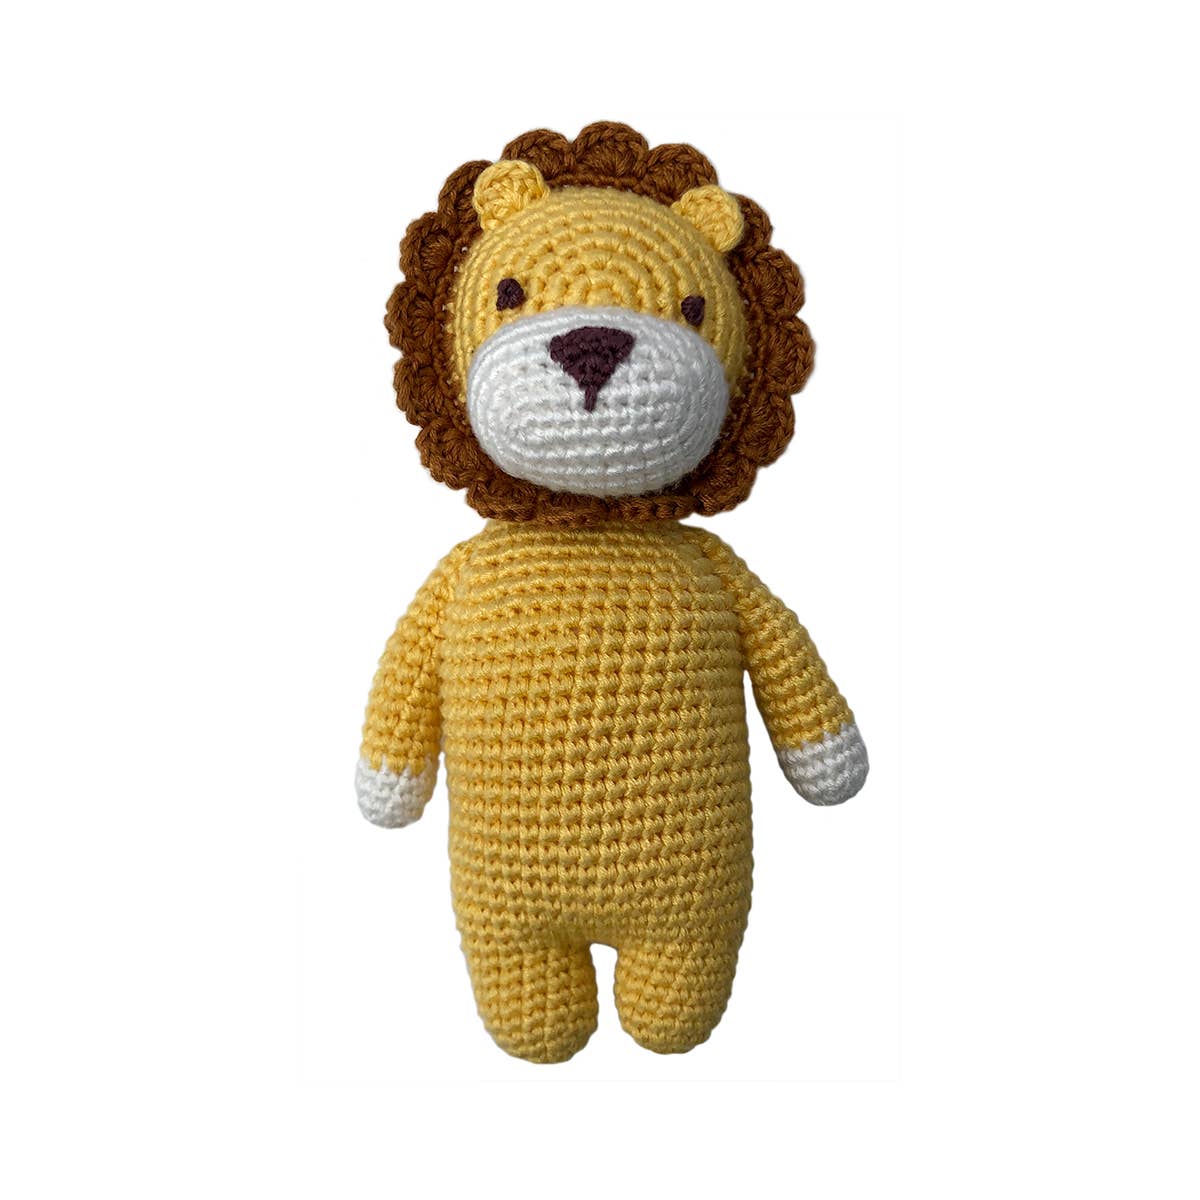 Leon Crochet Lion